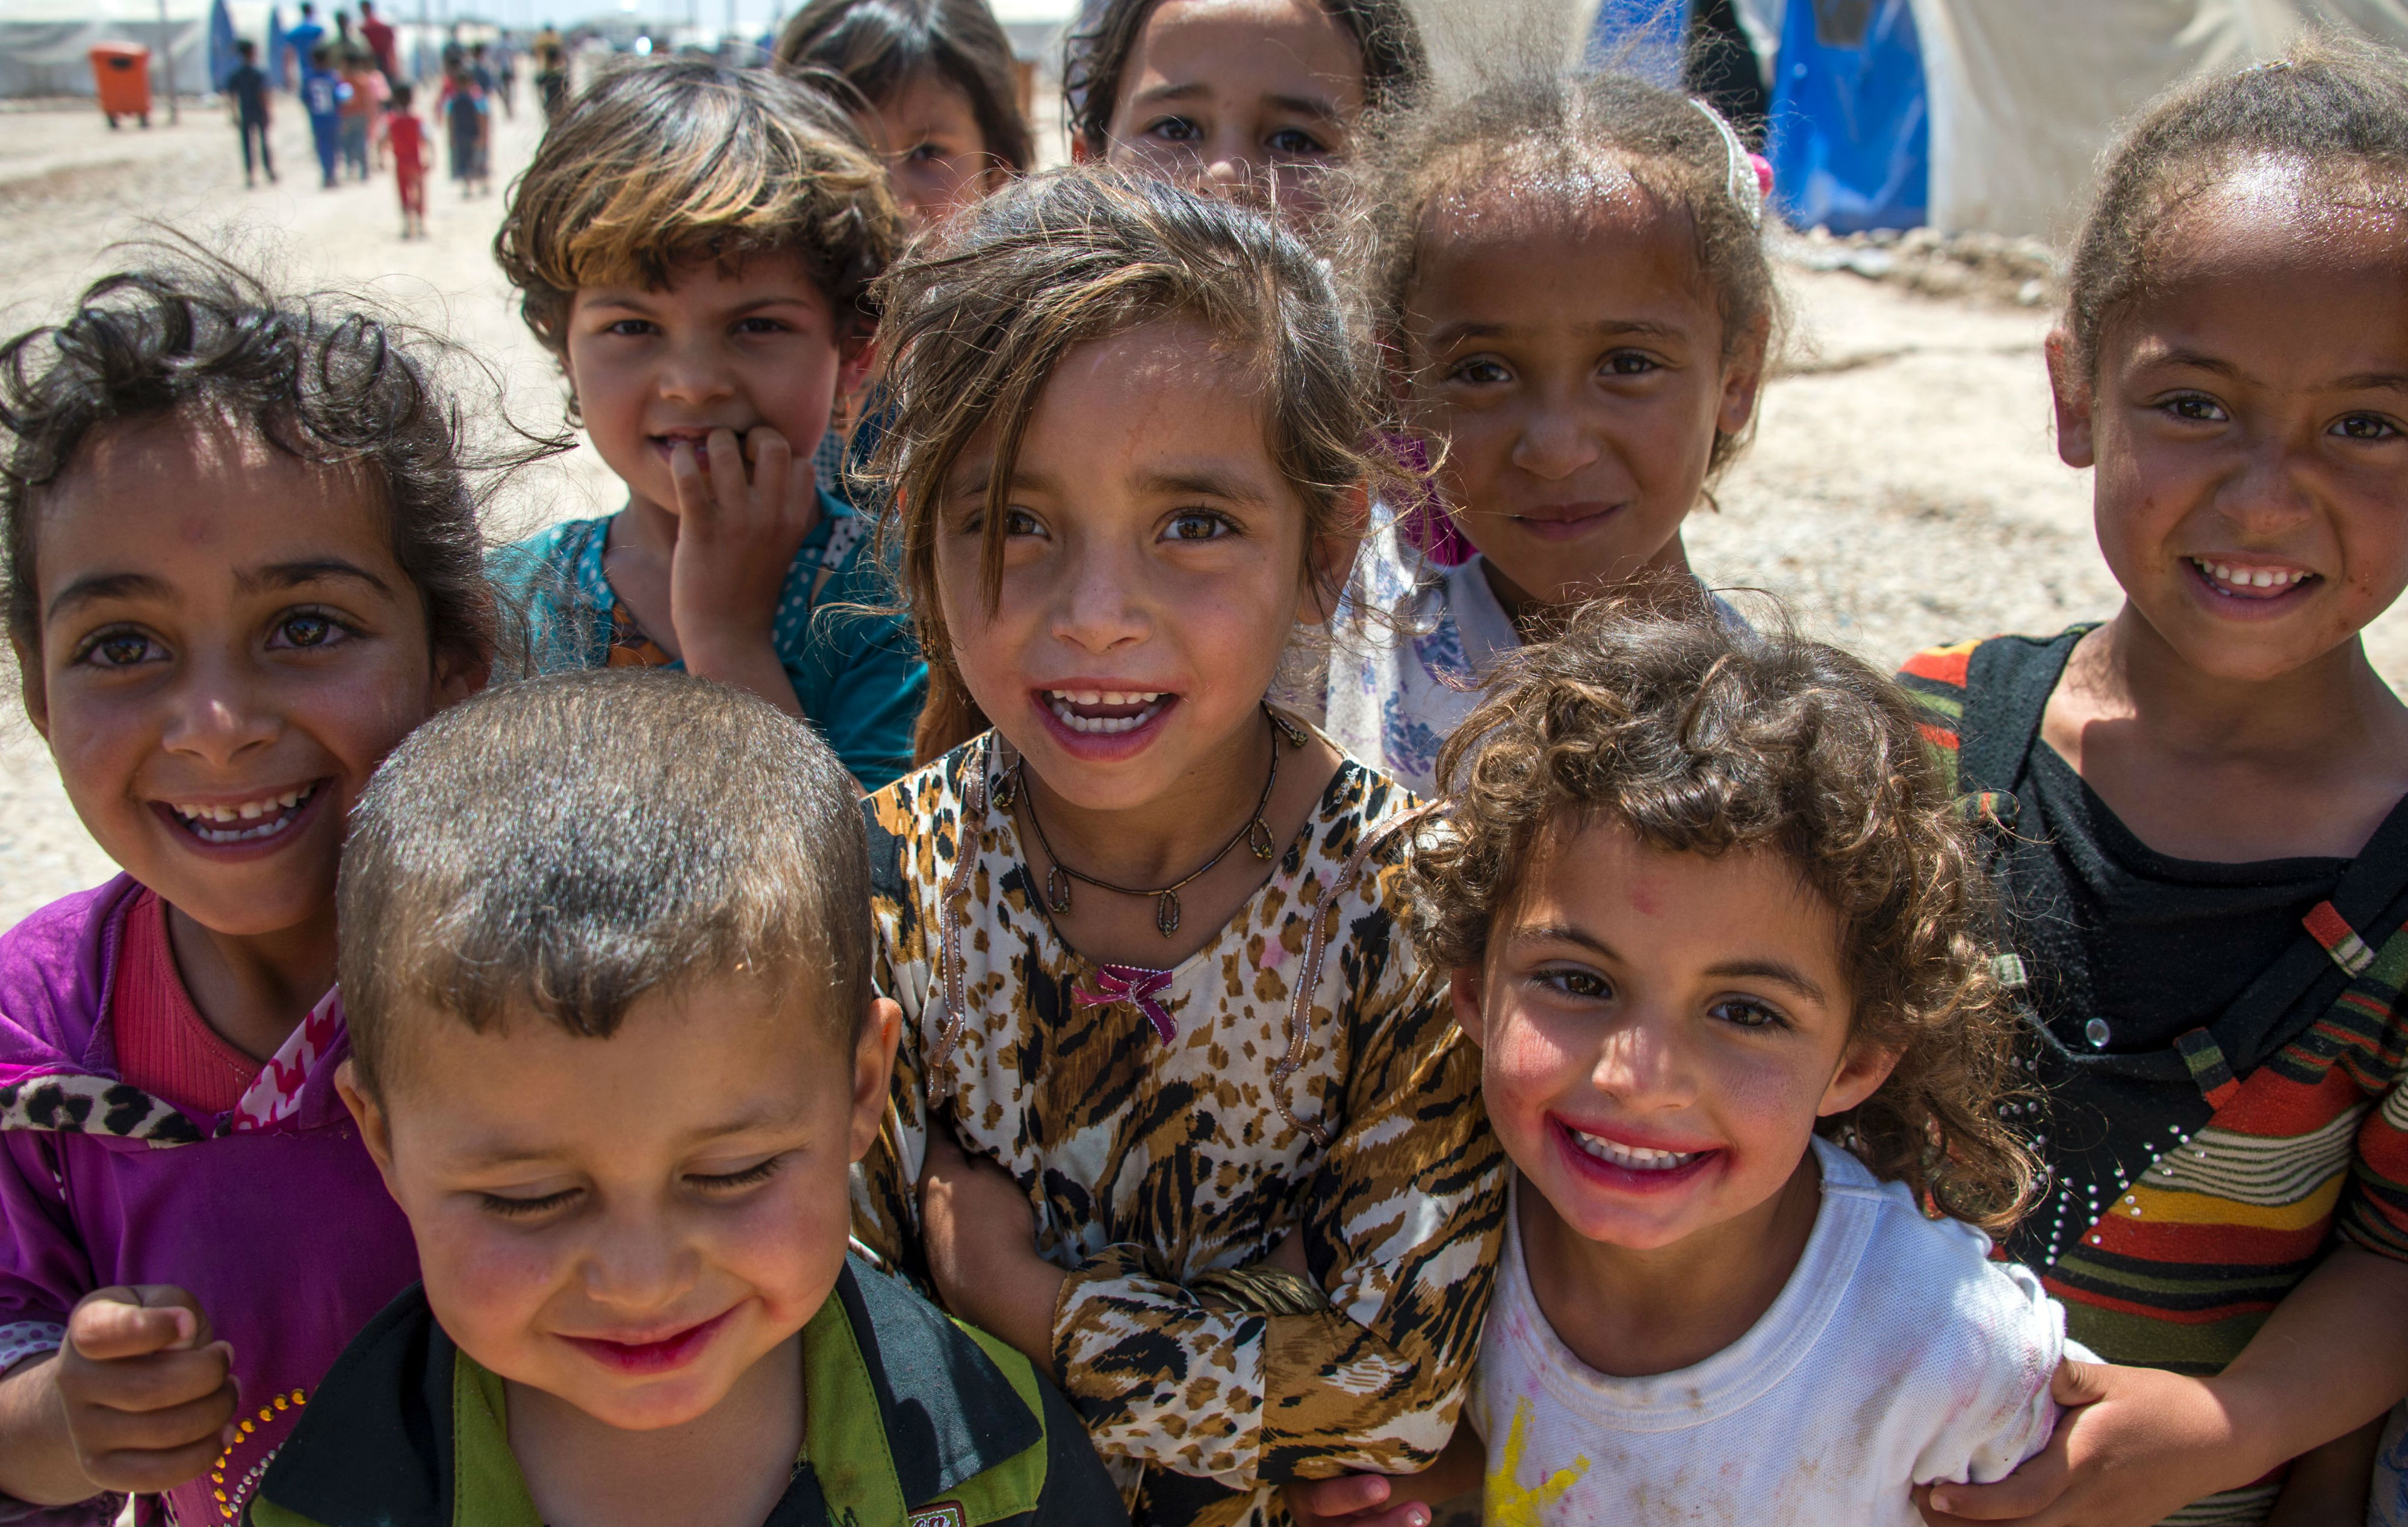 Children at refugee camp, Iraq